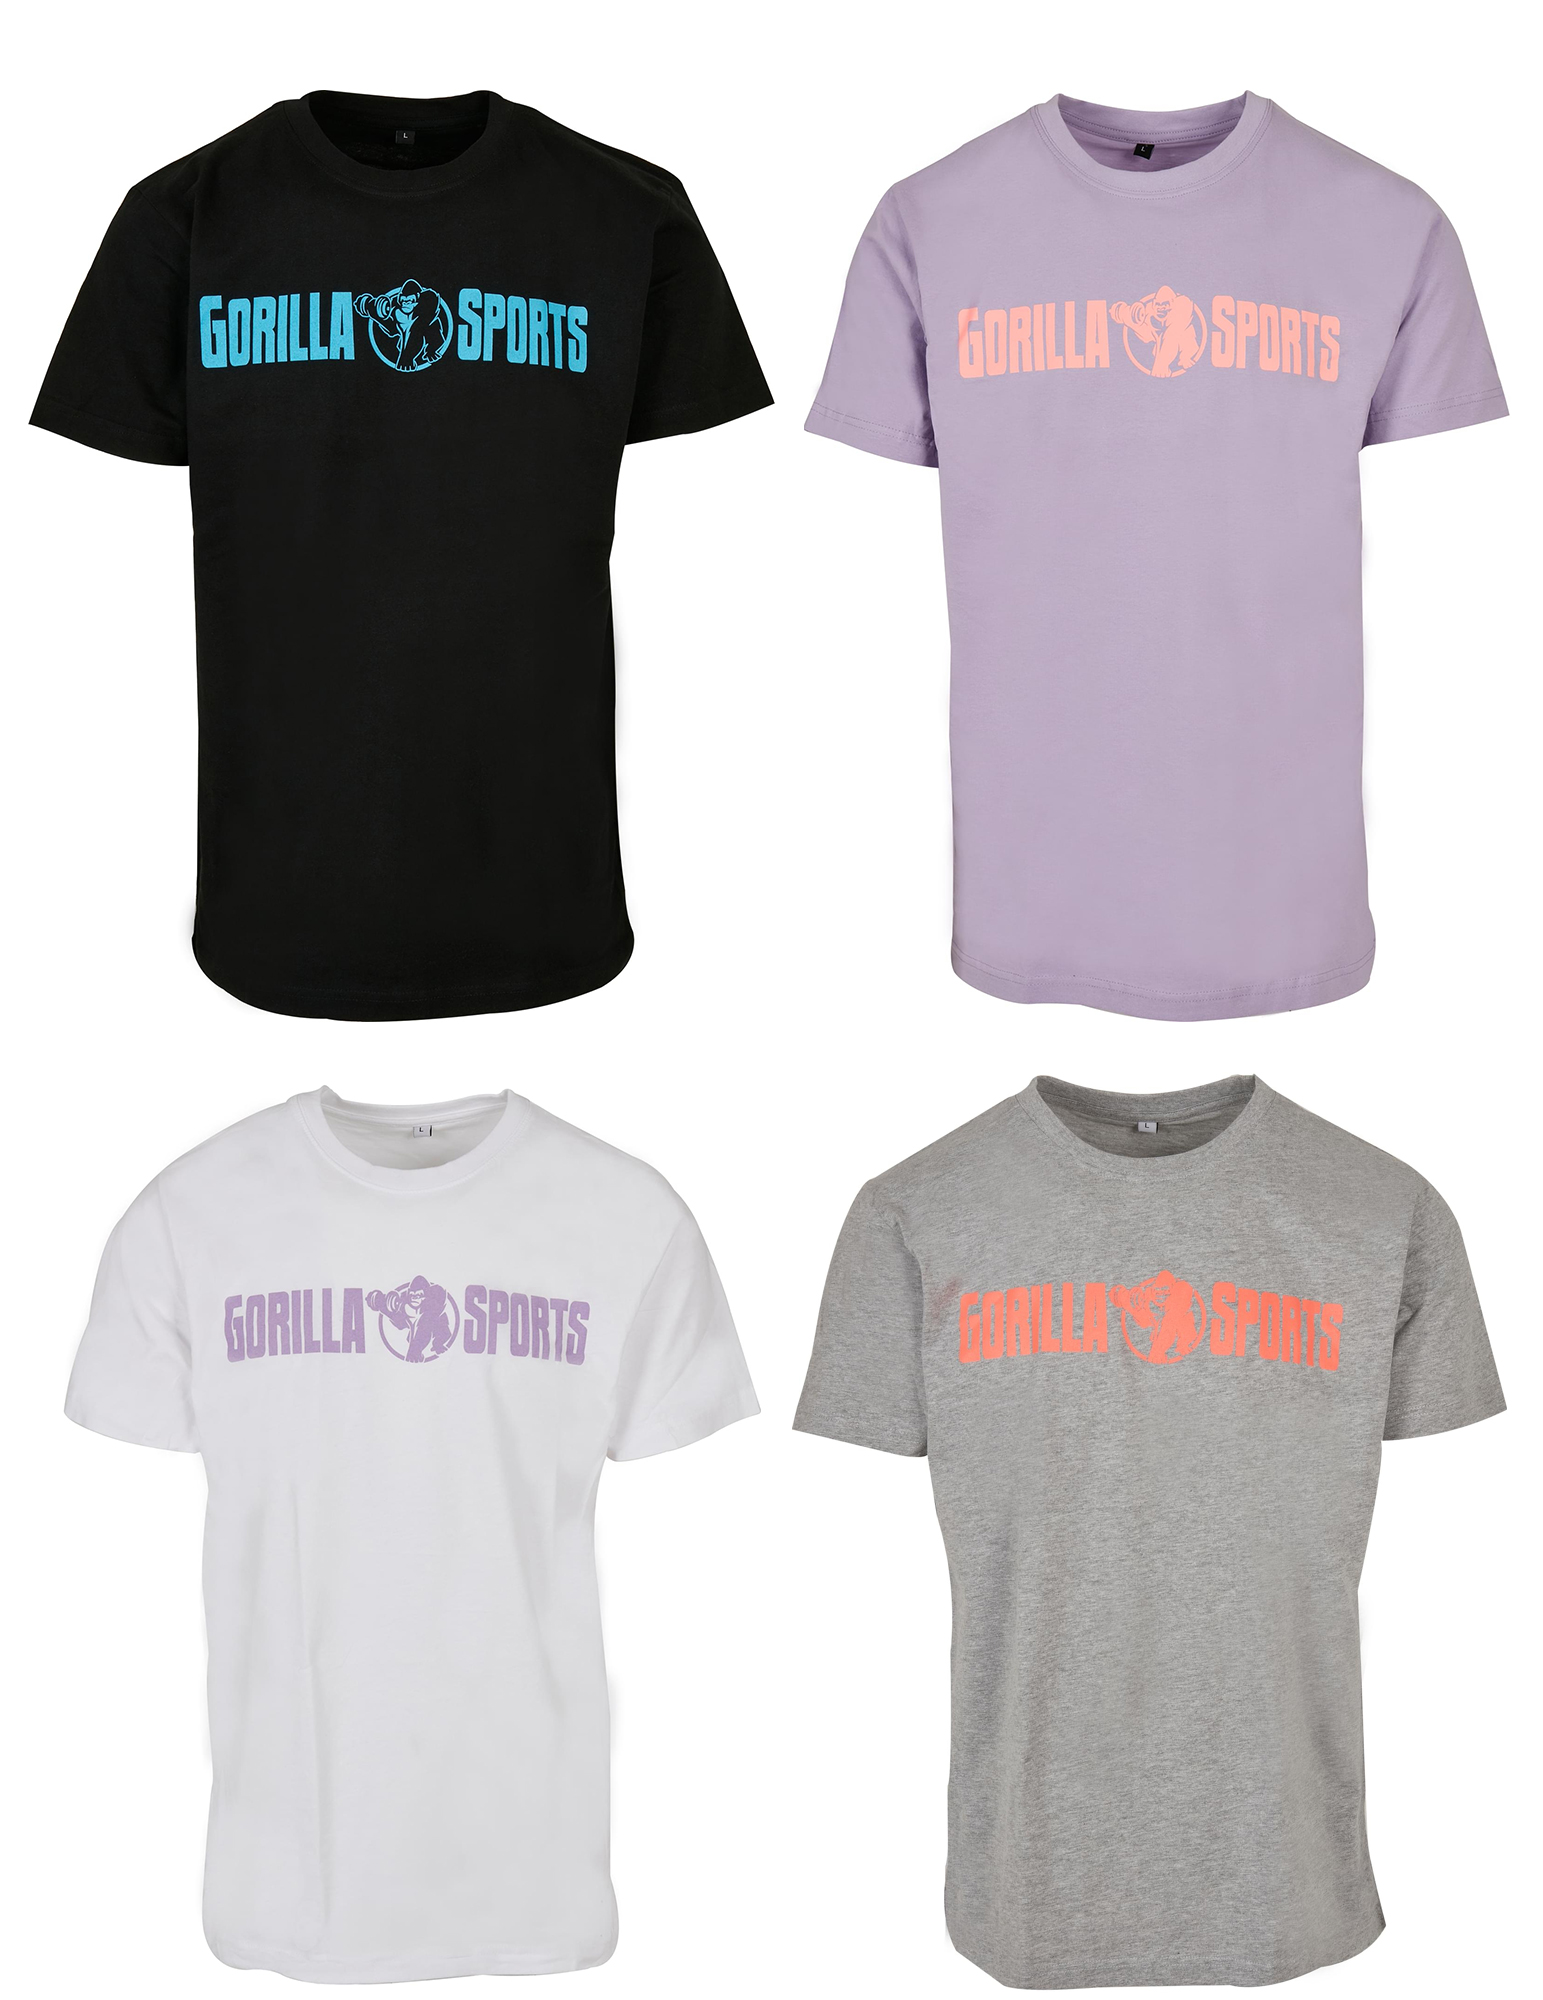 T-shirt mixte Ã col rond - Tailles S, M, L, XL, XXL et XXXL